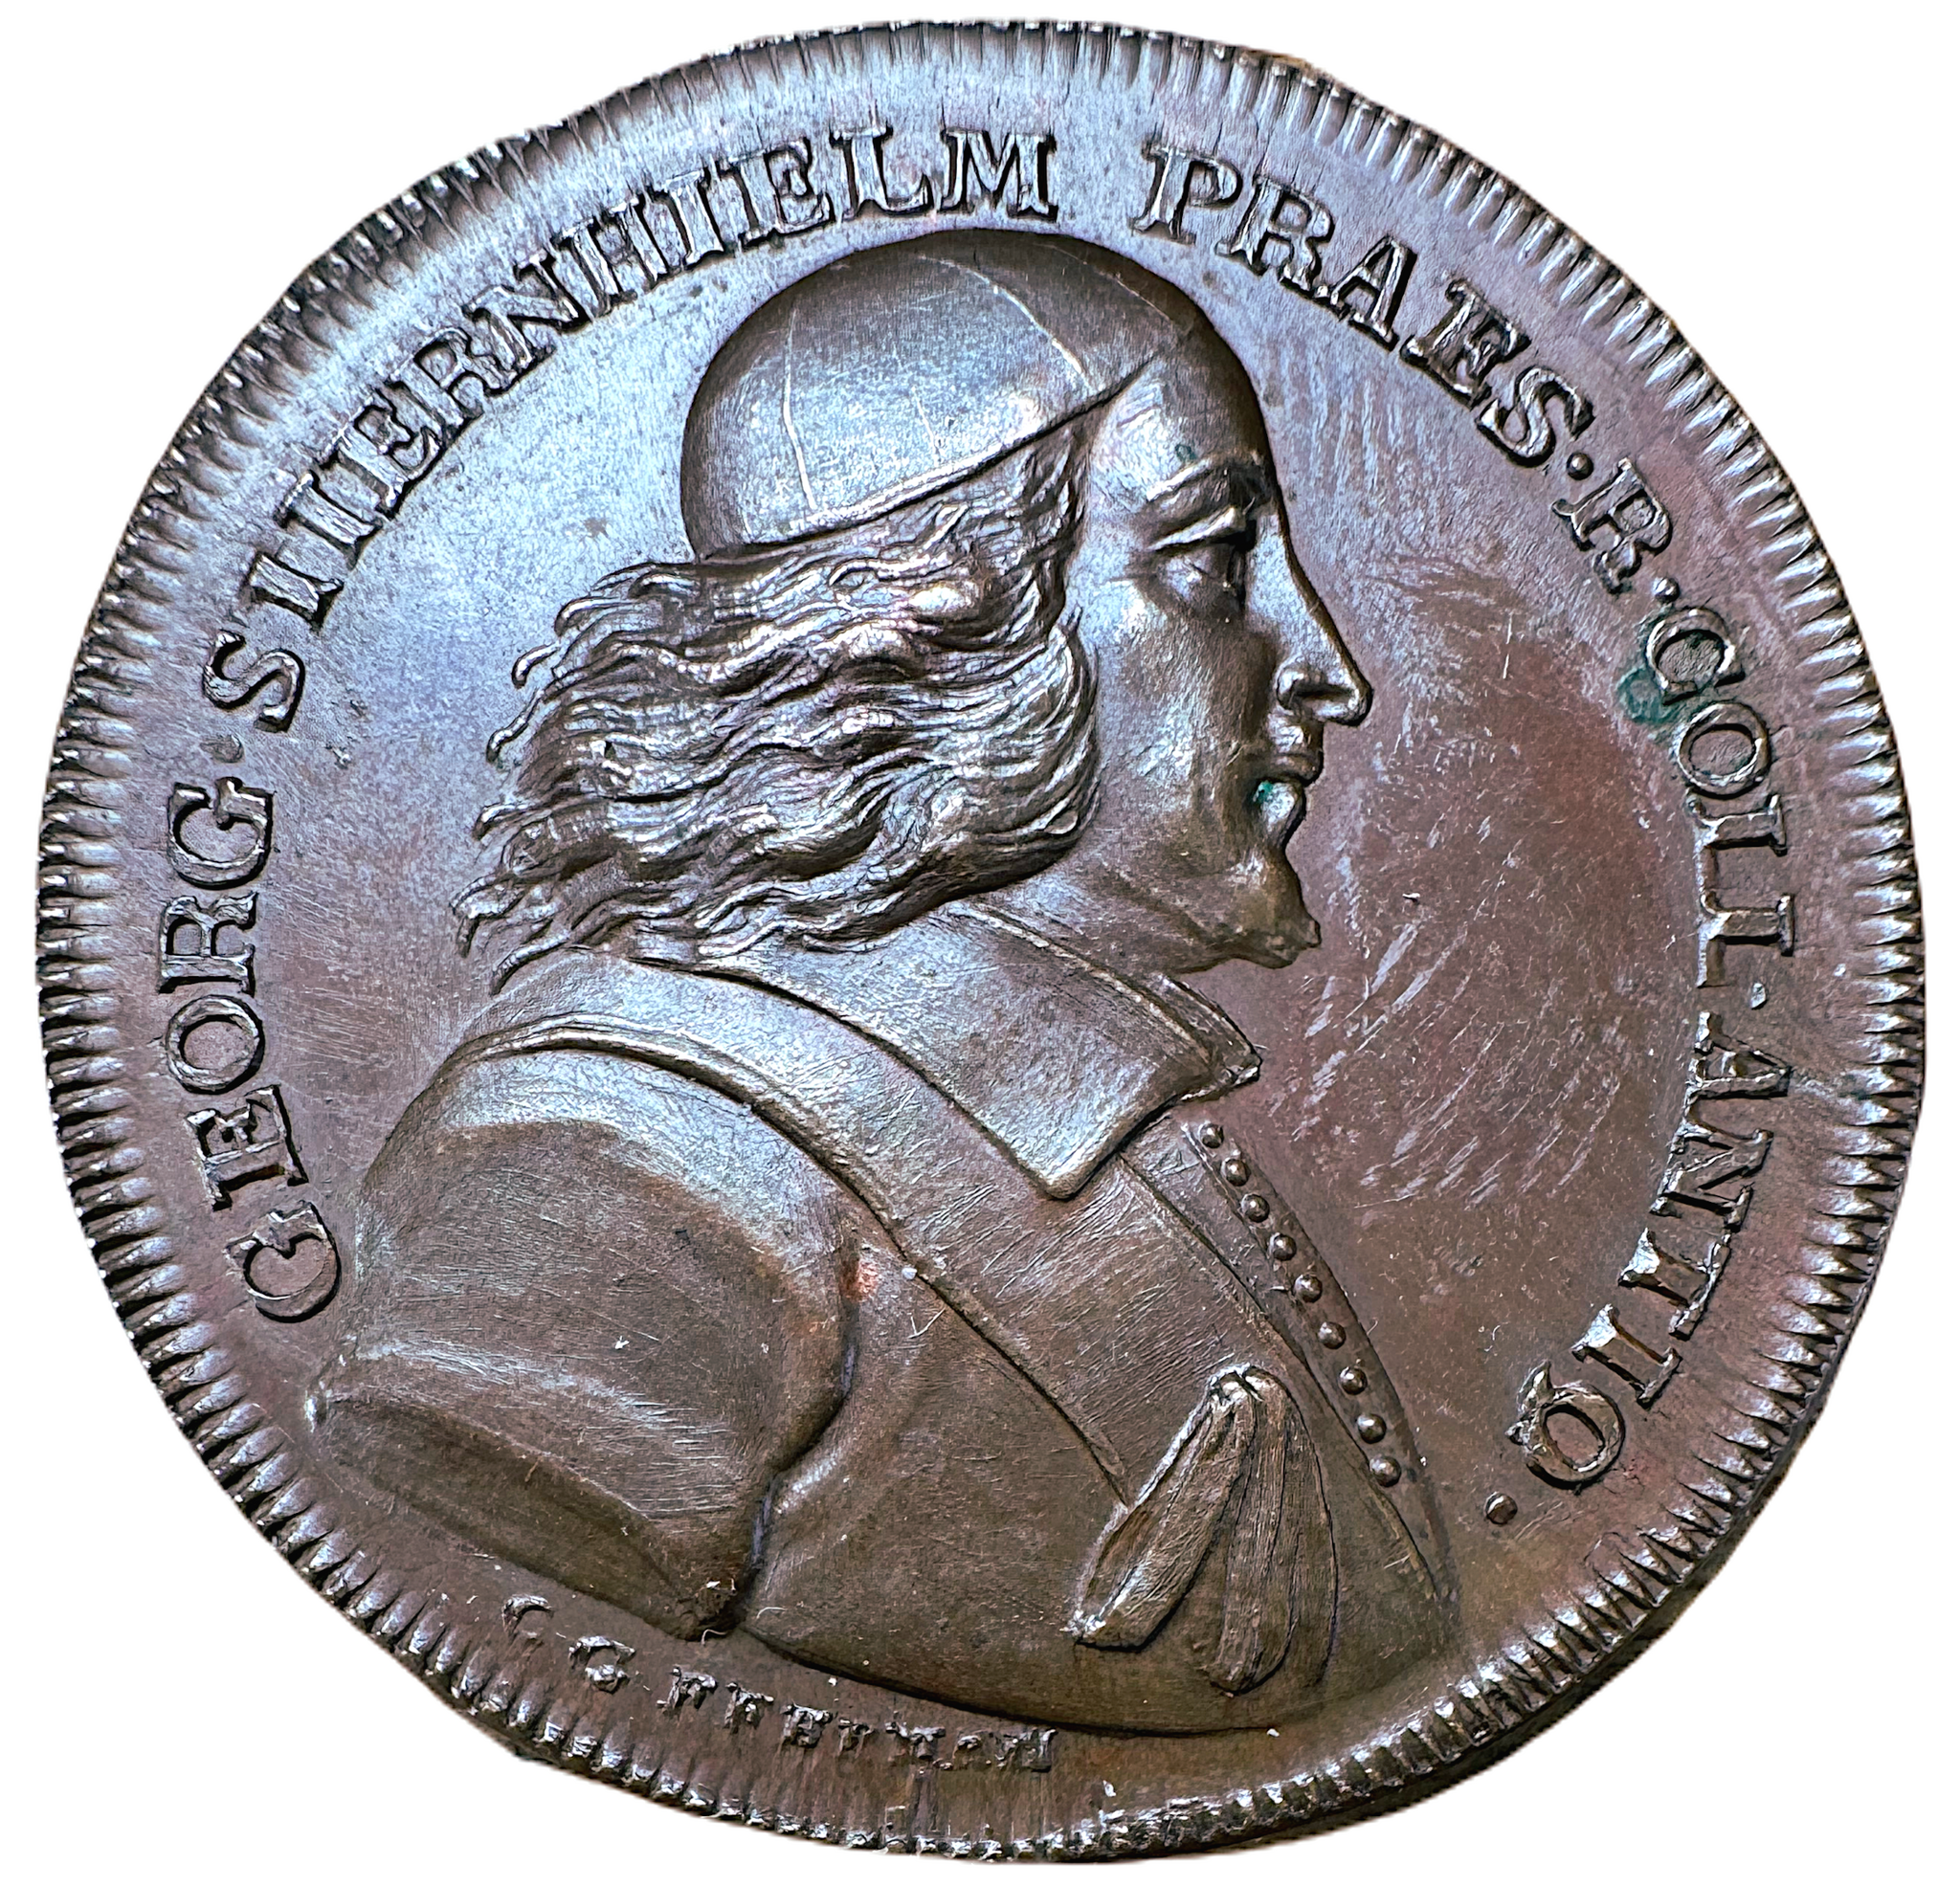 Georg Stiernhielm (1598-1672) av Carl Gustaf Fehrman 1791 - Den svenska skaldekonstens fader